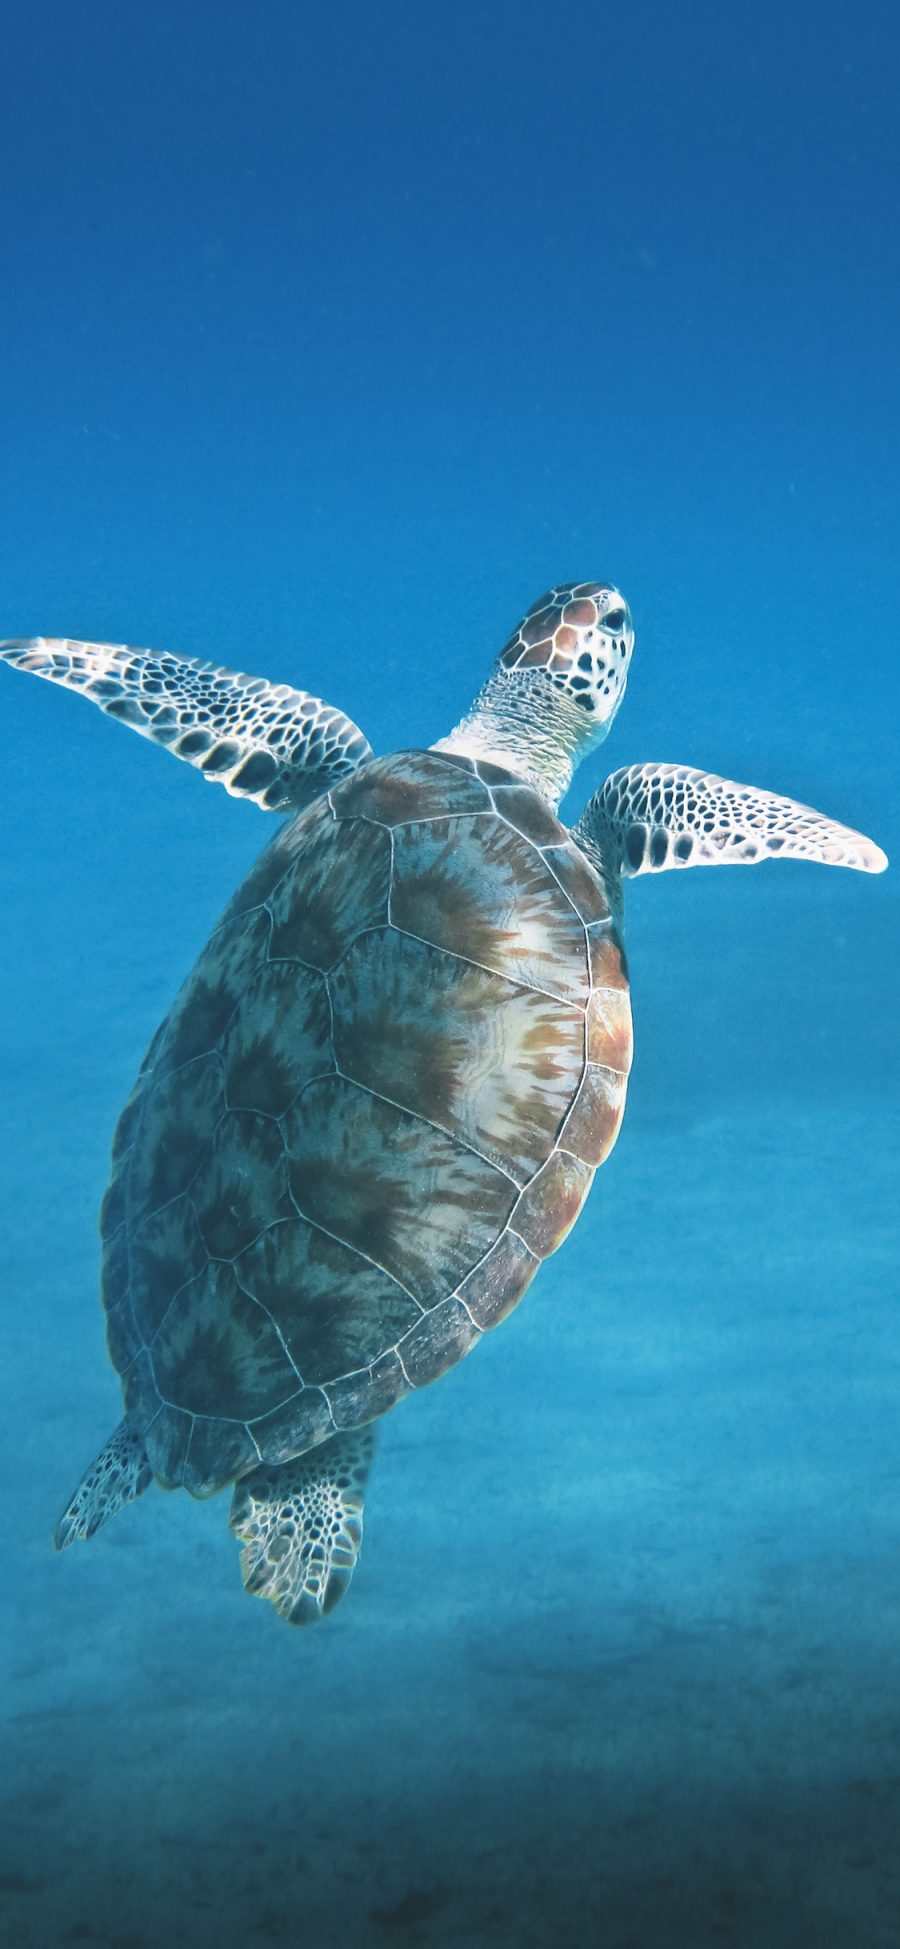 [2436×1125]海龟 海洋生物 蓝色 海底 游泳 苹果手机壁纸图片